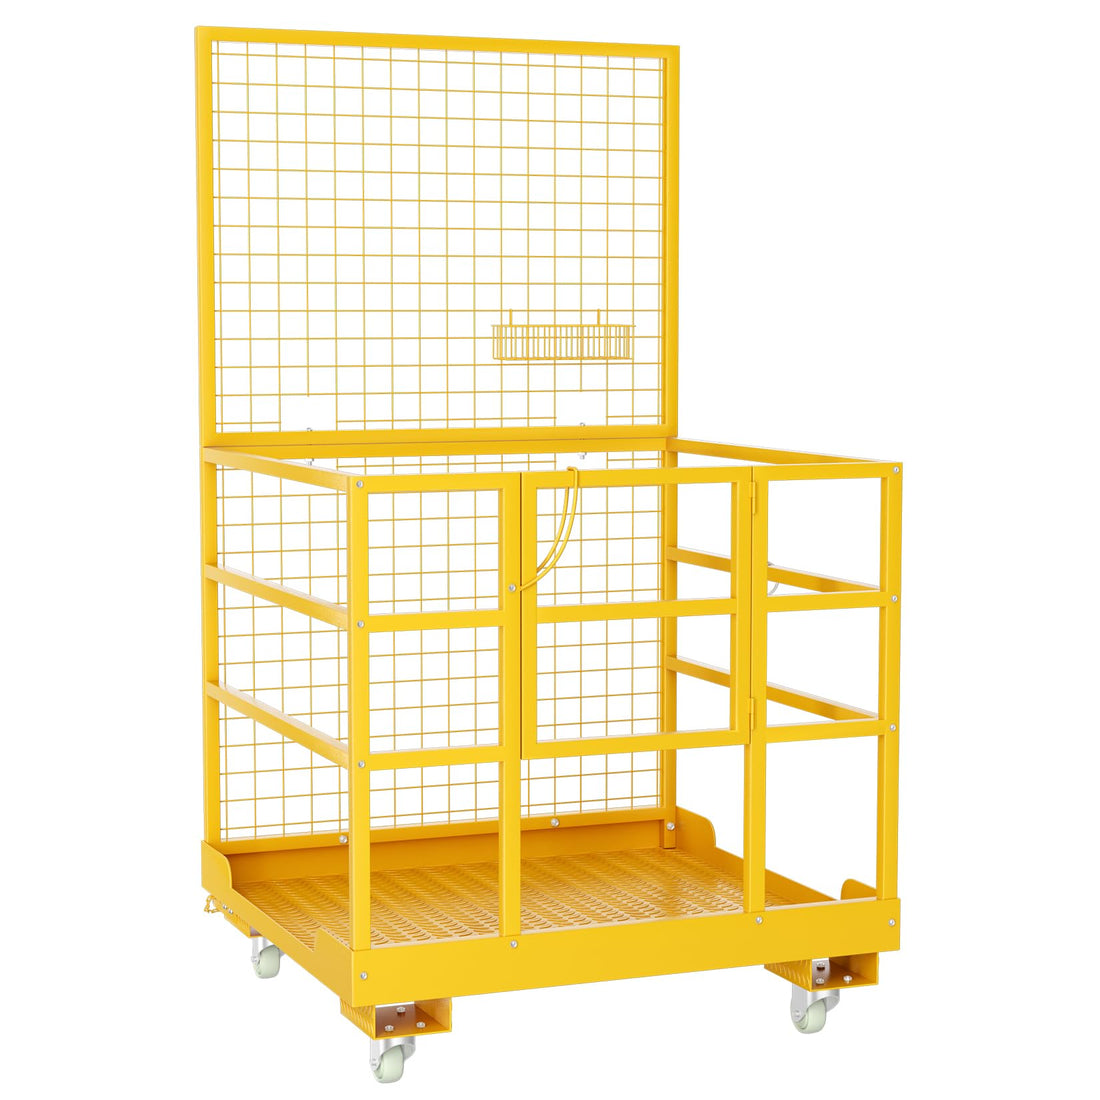 43"x45" Forklift Safety Cage, 1400lbs Capacity Forklift Man Basket Forklift Work Platform with Safety Harness Collapsible Lift Basket Aerial Platform